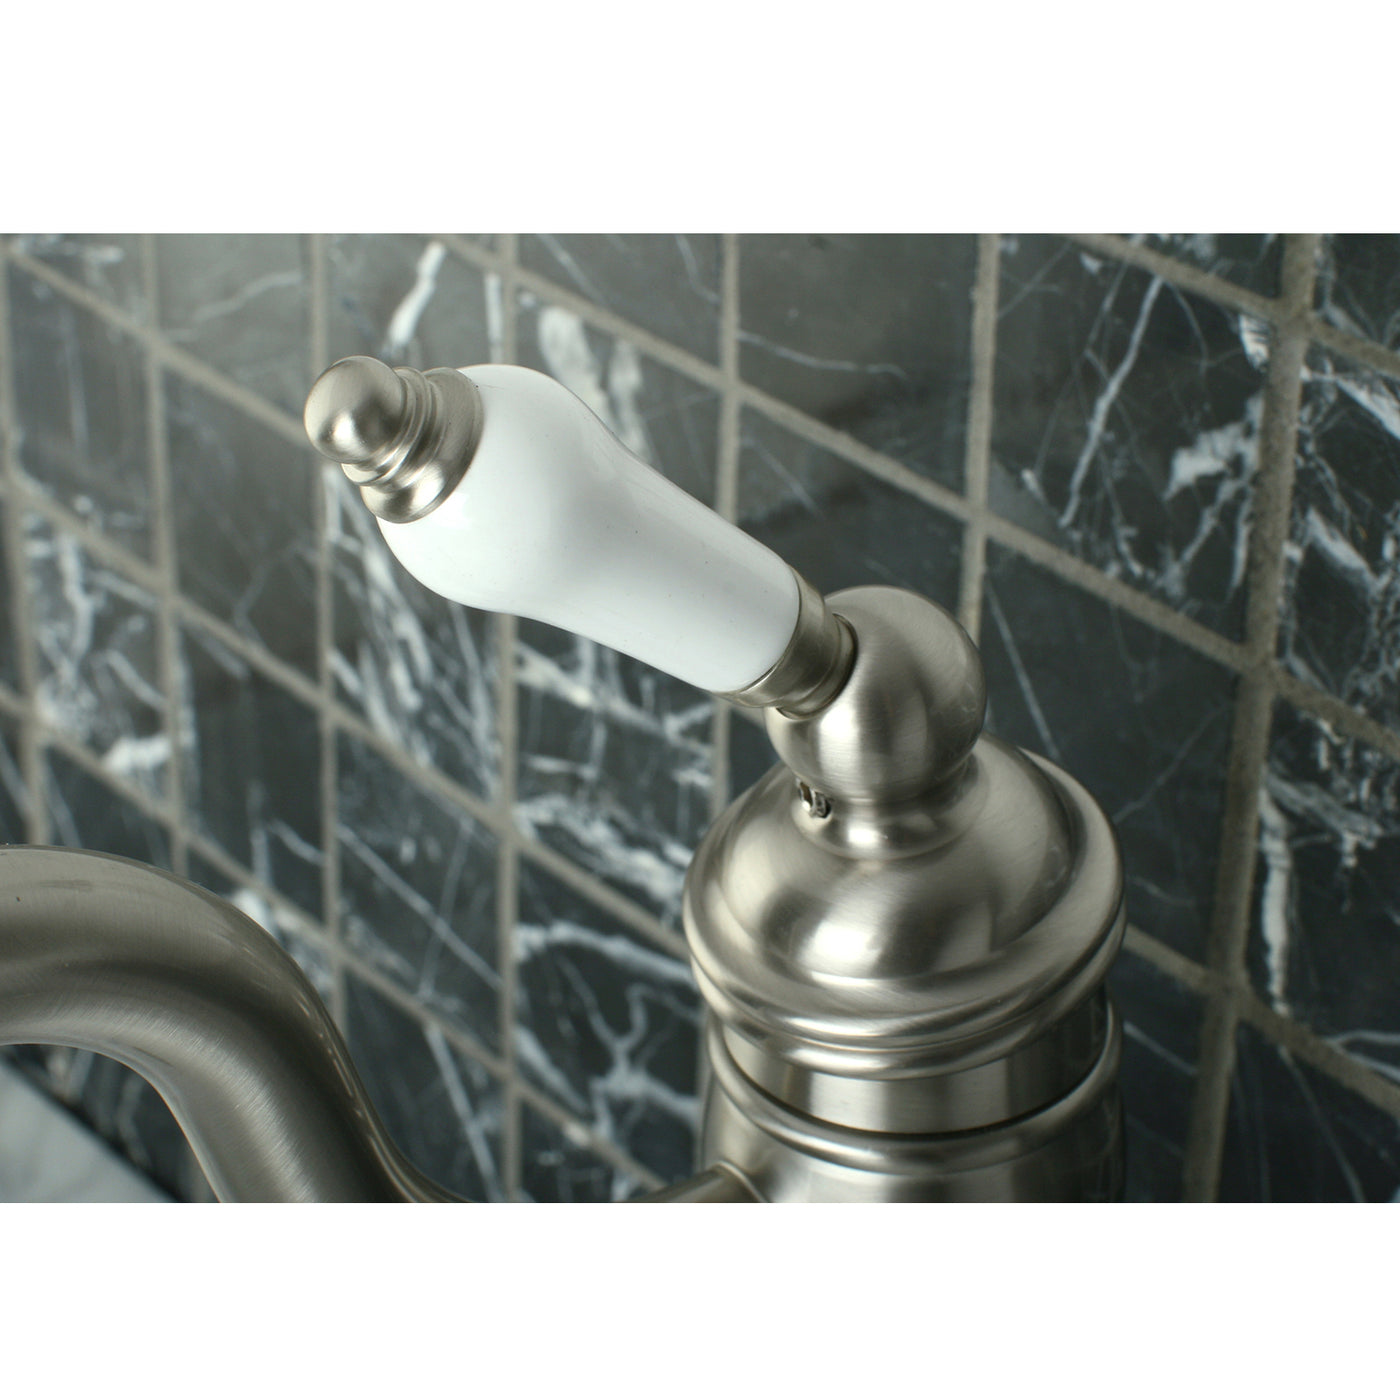 Elements of Design EB1428PL Vessel Sink Faucet, Brushed Nickel